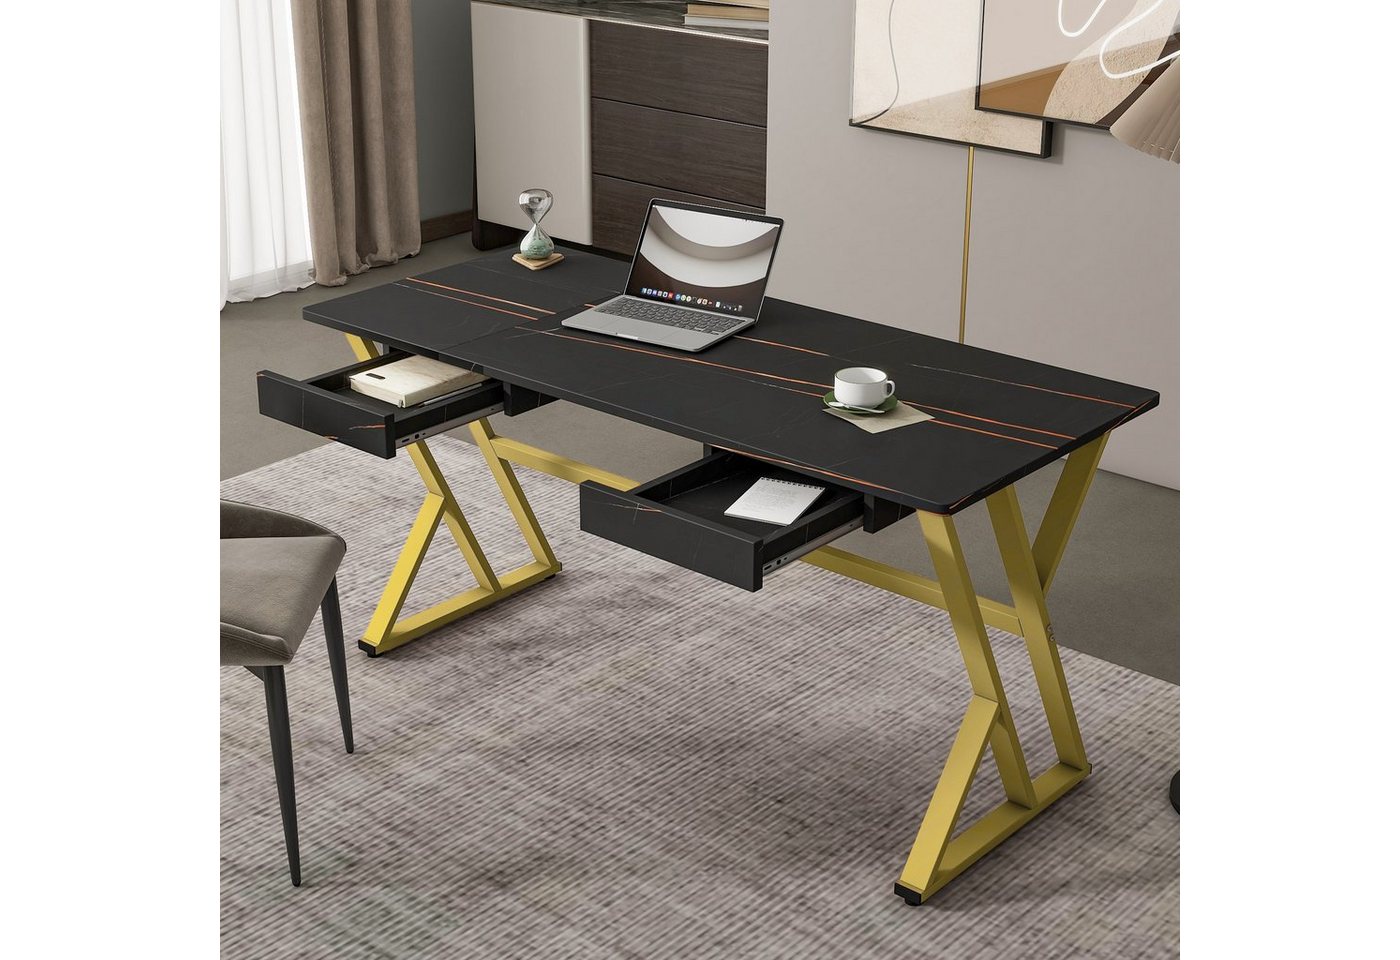 Fangqi Arbeitstisch 150*60*74cm grosser Computer-Schreibtisch mit zwei Schubladen (Er kann auch in einem Arbeitszimmer, als Frisiertisch oder sogar als kleiner Esstisch verwendet werden), gold + schwarz marmoriert von Fangqi